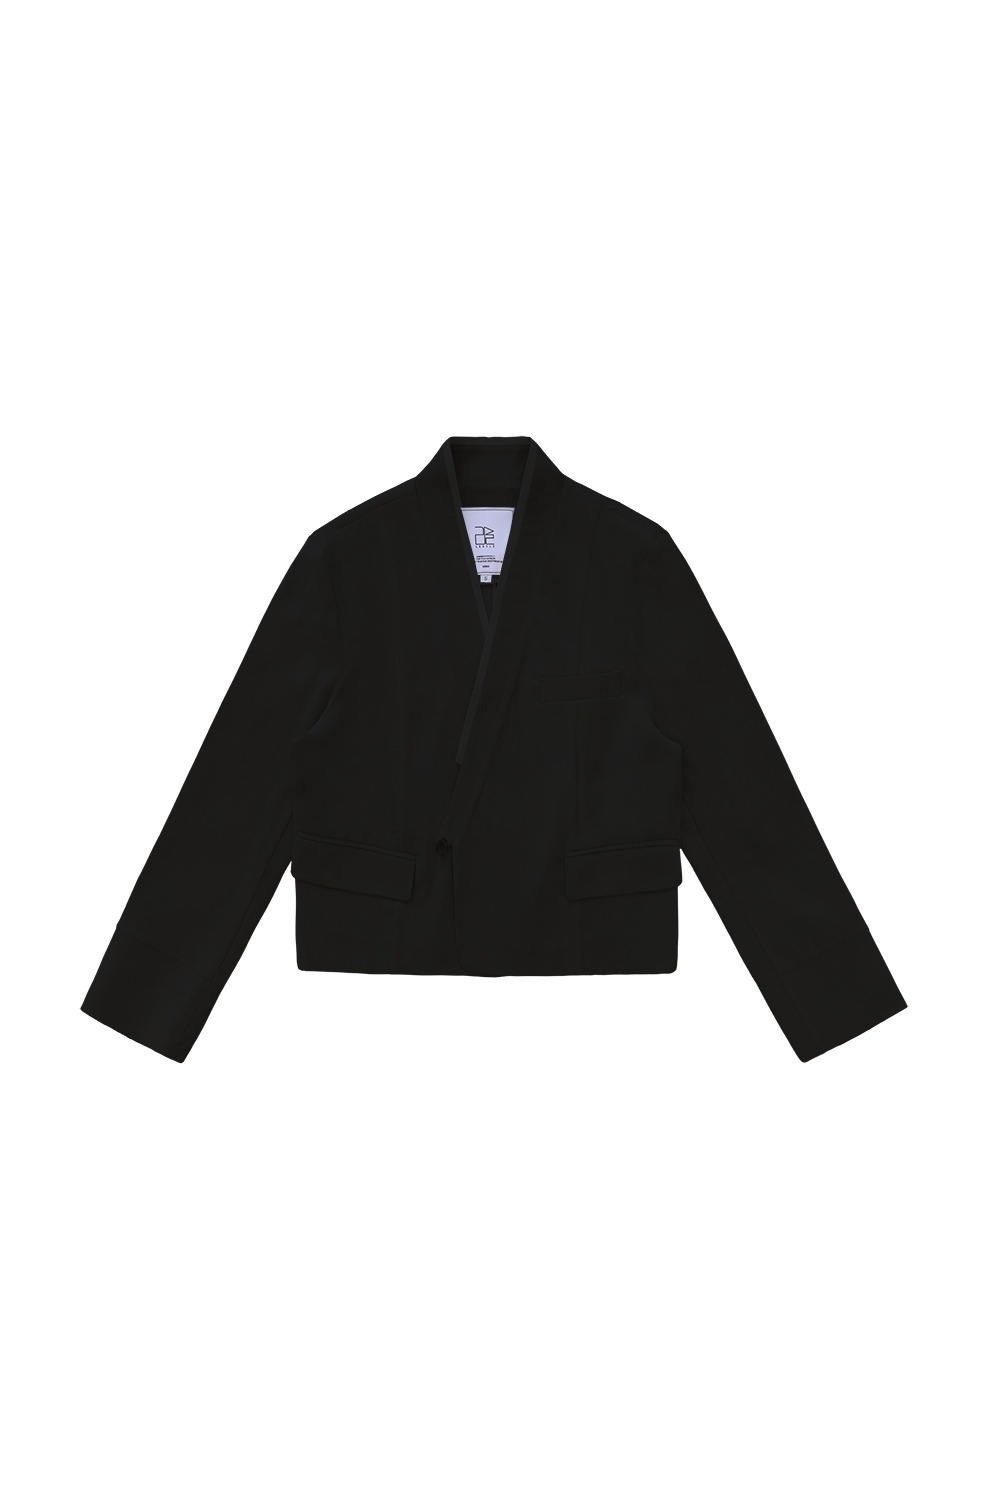 Leerum Linen Jacket [Short-Black]